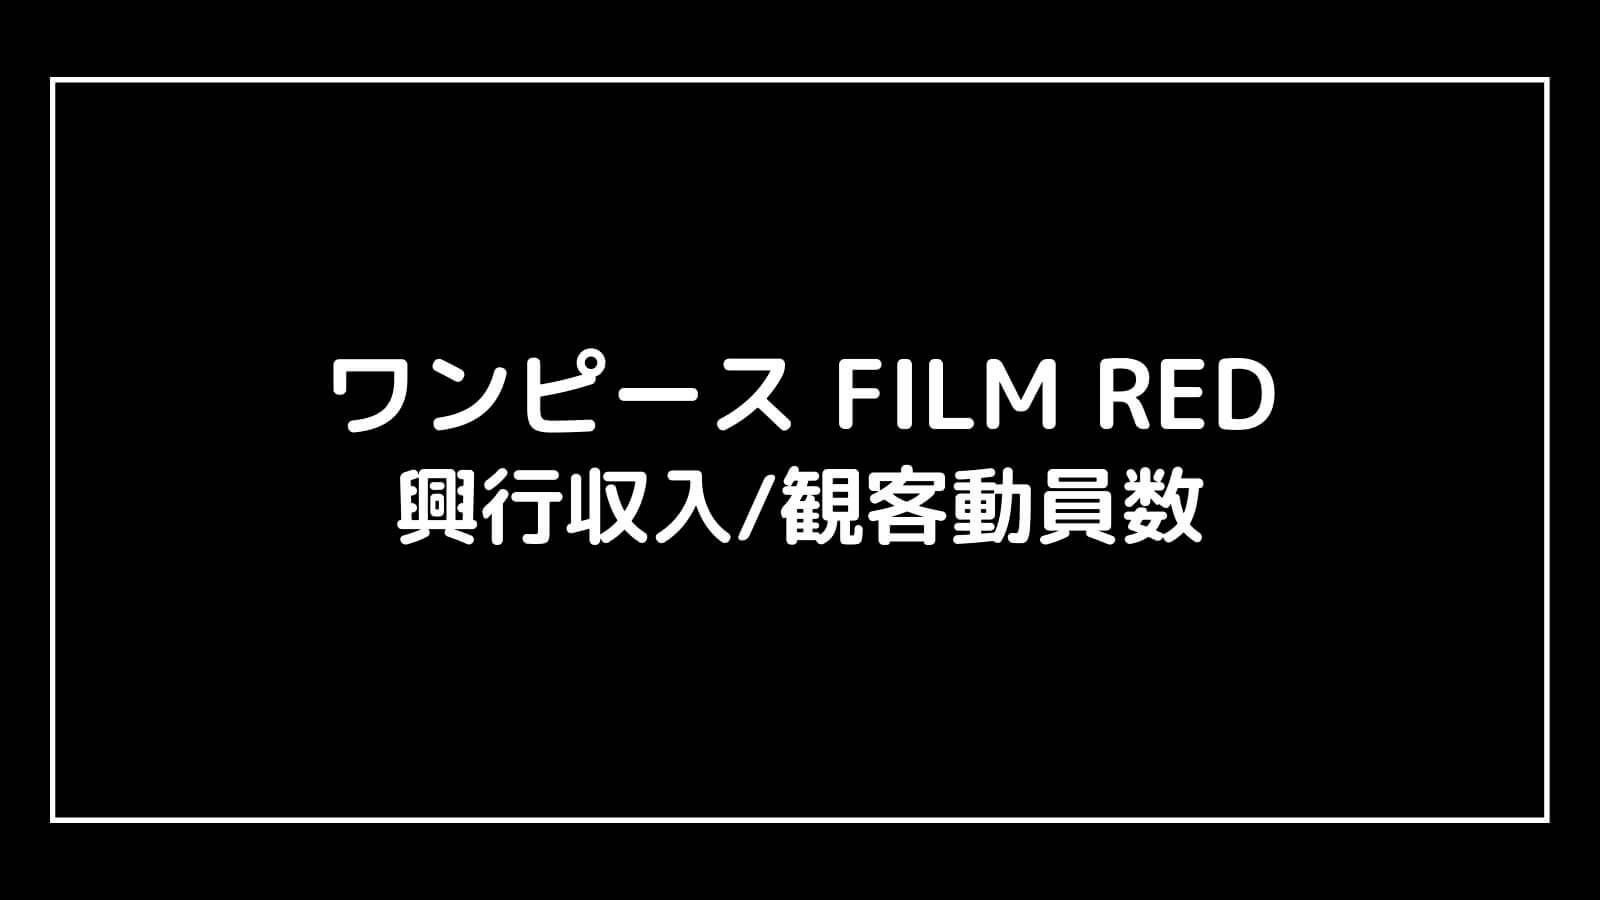 ONE PIECE FILM RED｜興行収入と観客動員数の推移と予想まとめ